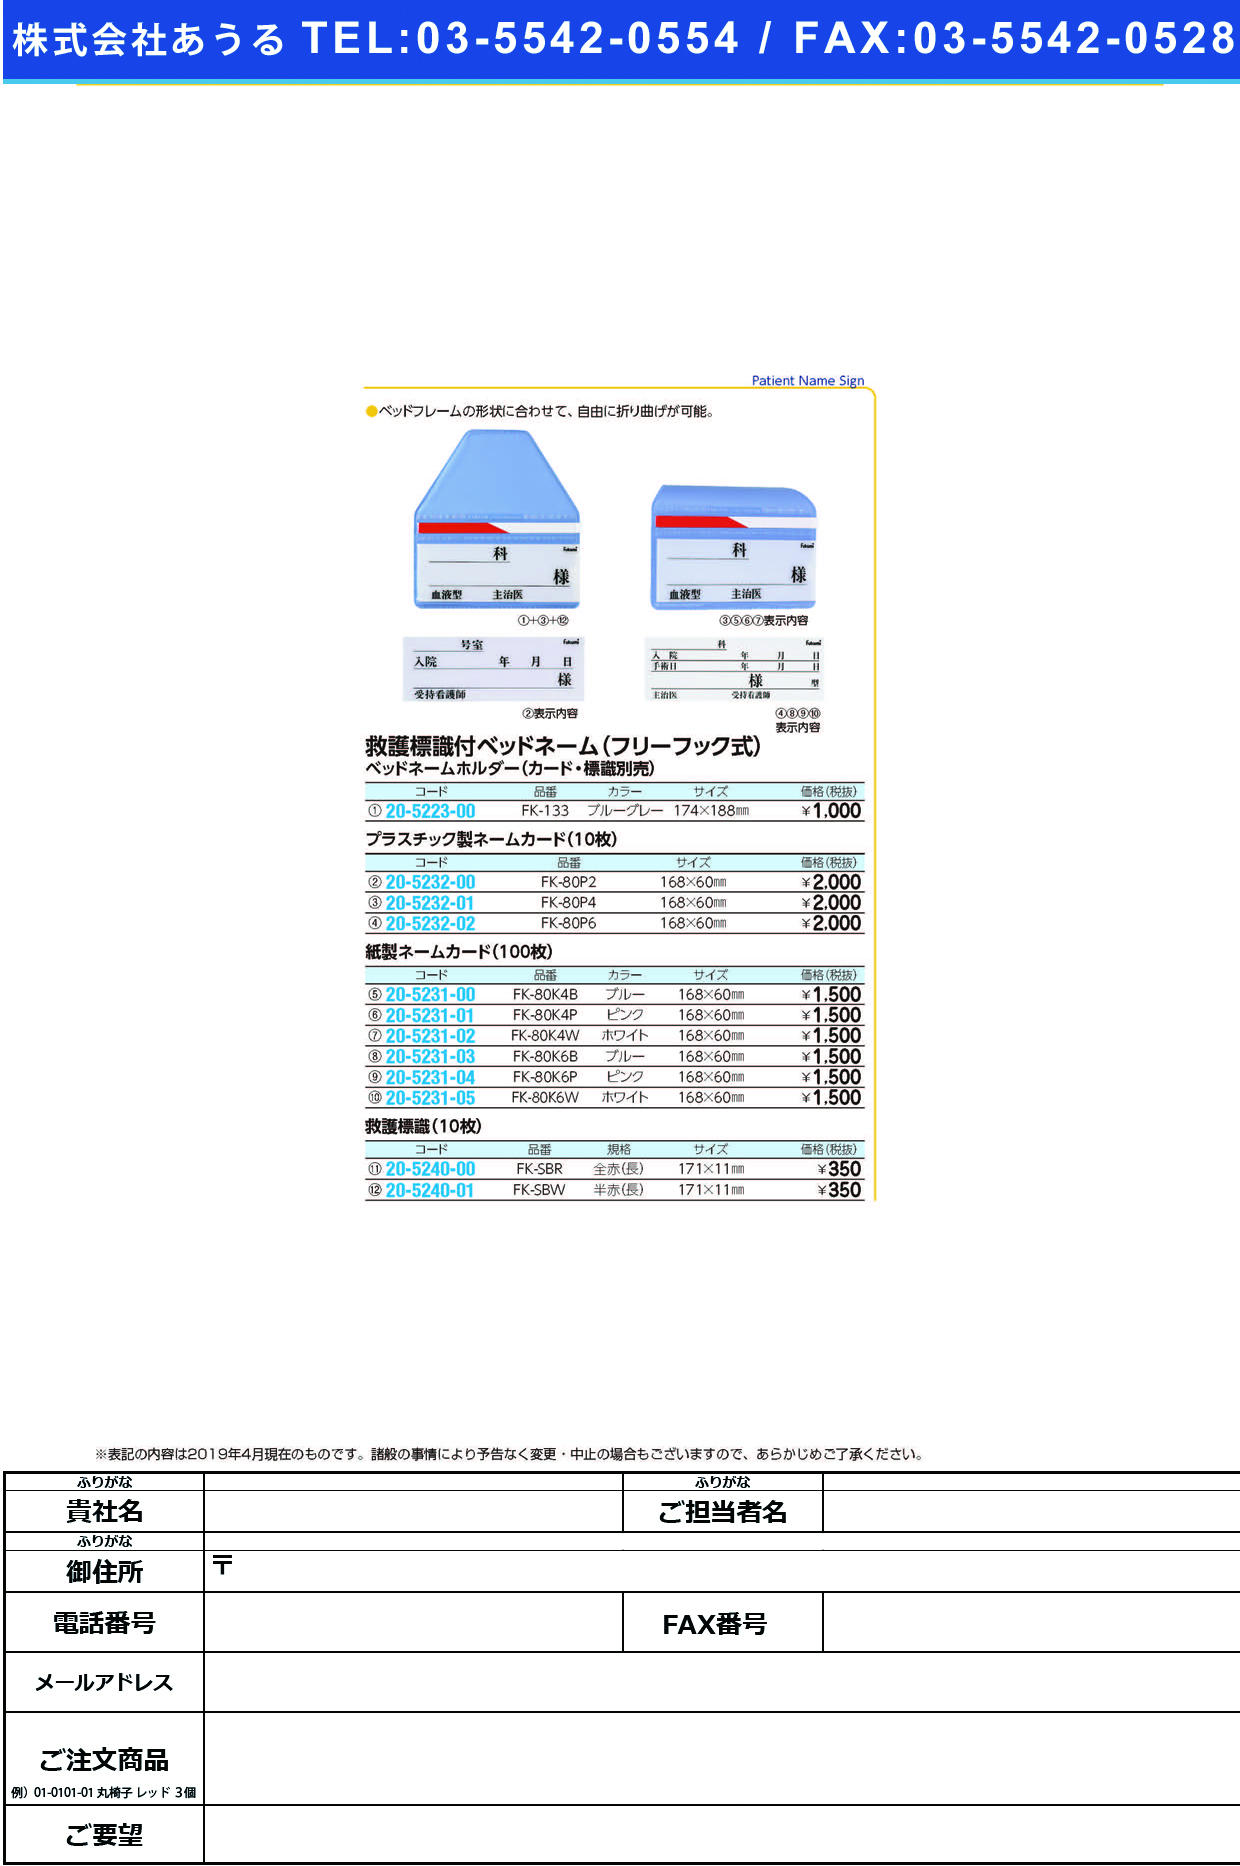 (20-5231-00)ネームカード（紙） FK-80K4B(100ﾏｲｲﾘ) ﾈｰﾑｶｰﾄﾞ【1束単位】【2019年カタログ商品】